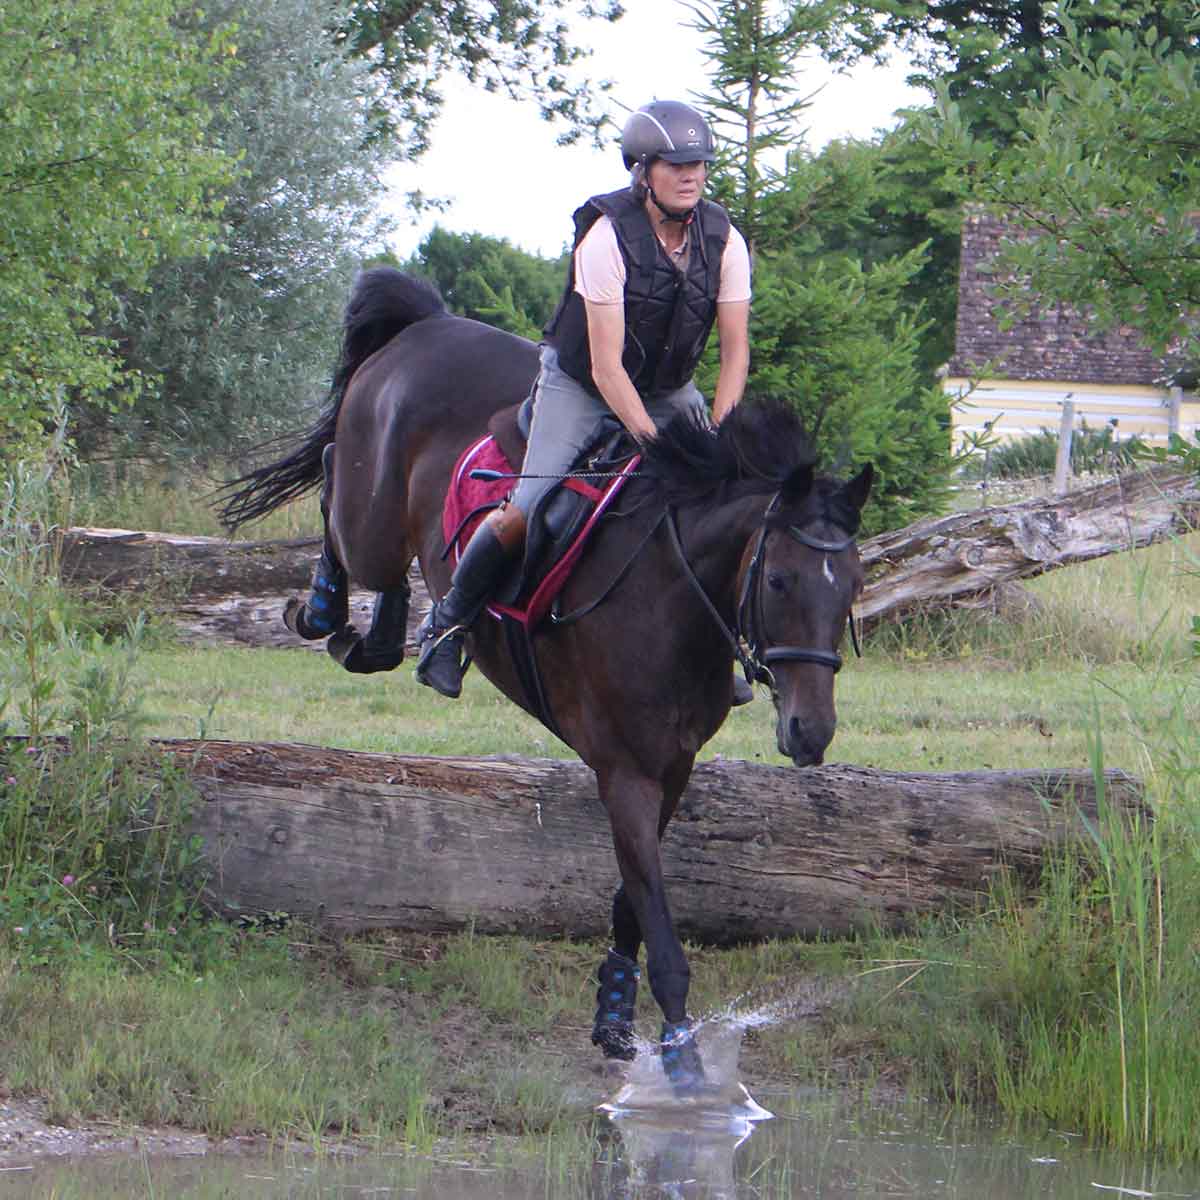 Ruth Bass nimmt mit ihrem Pferd eine Hürde in der Natur